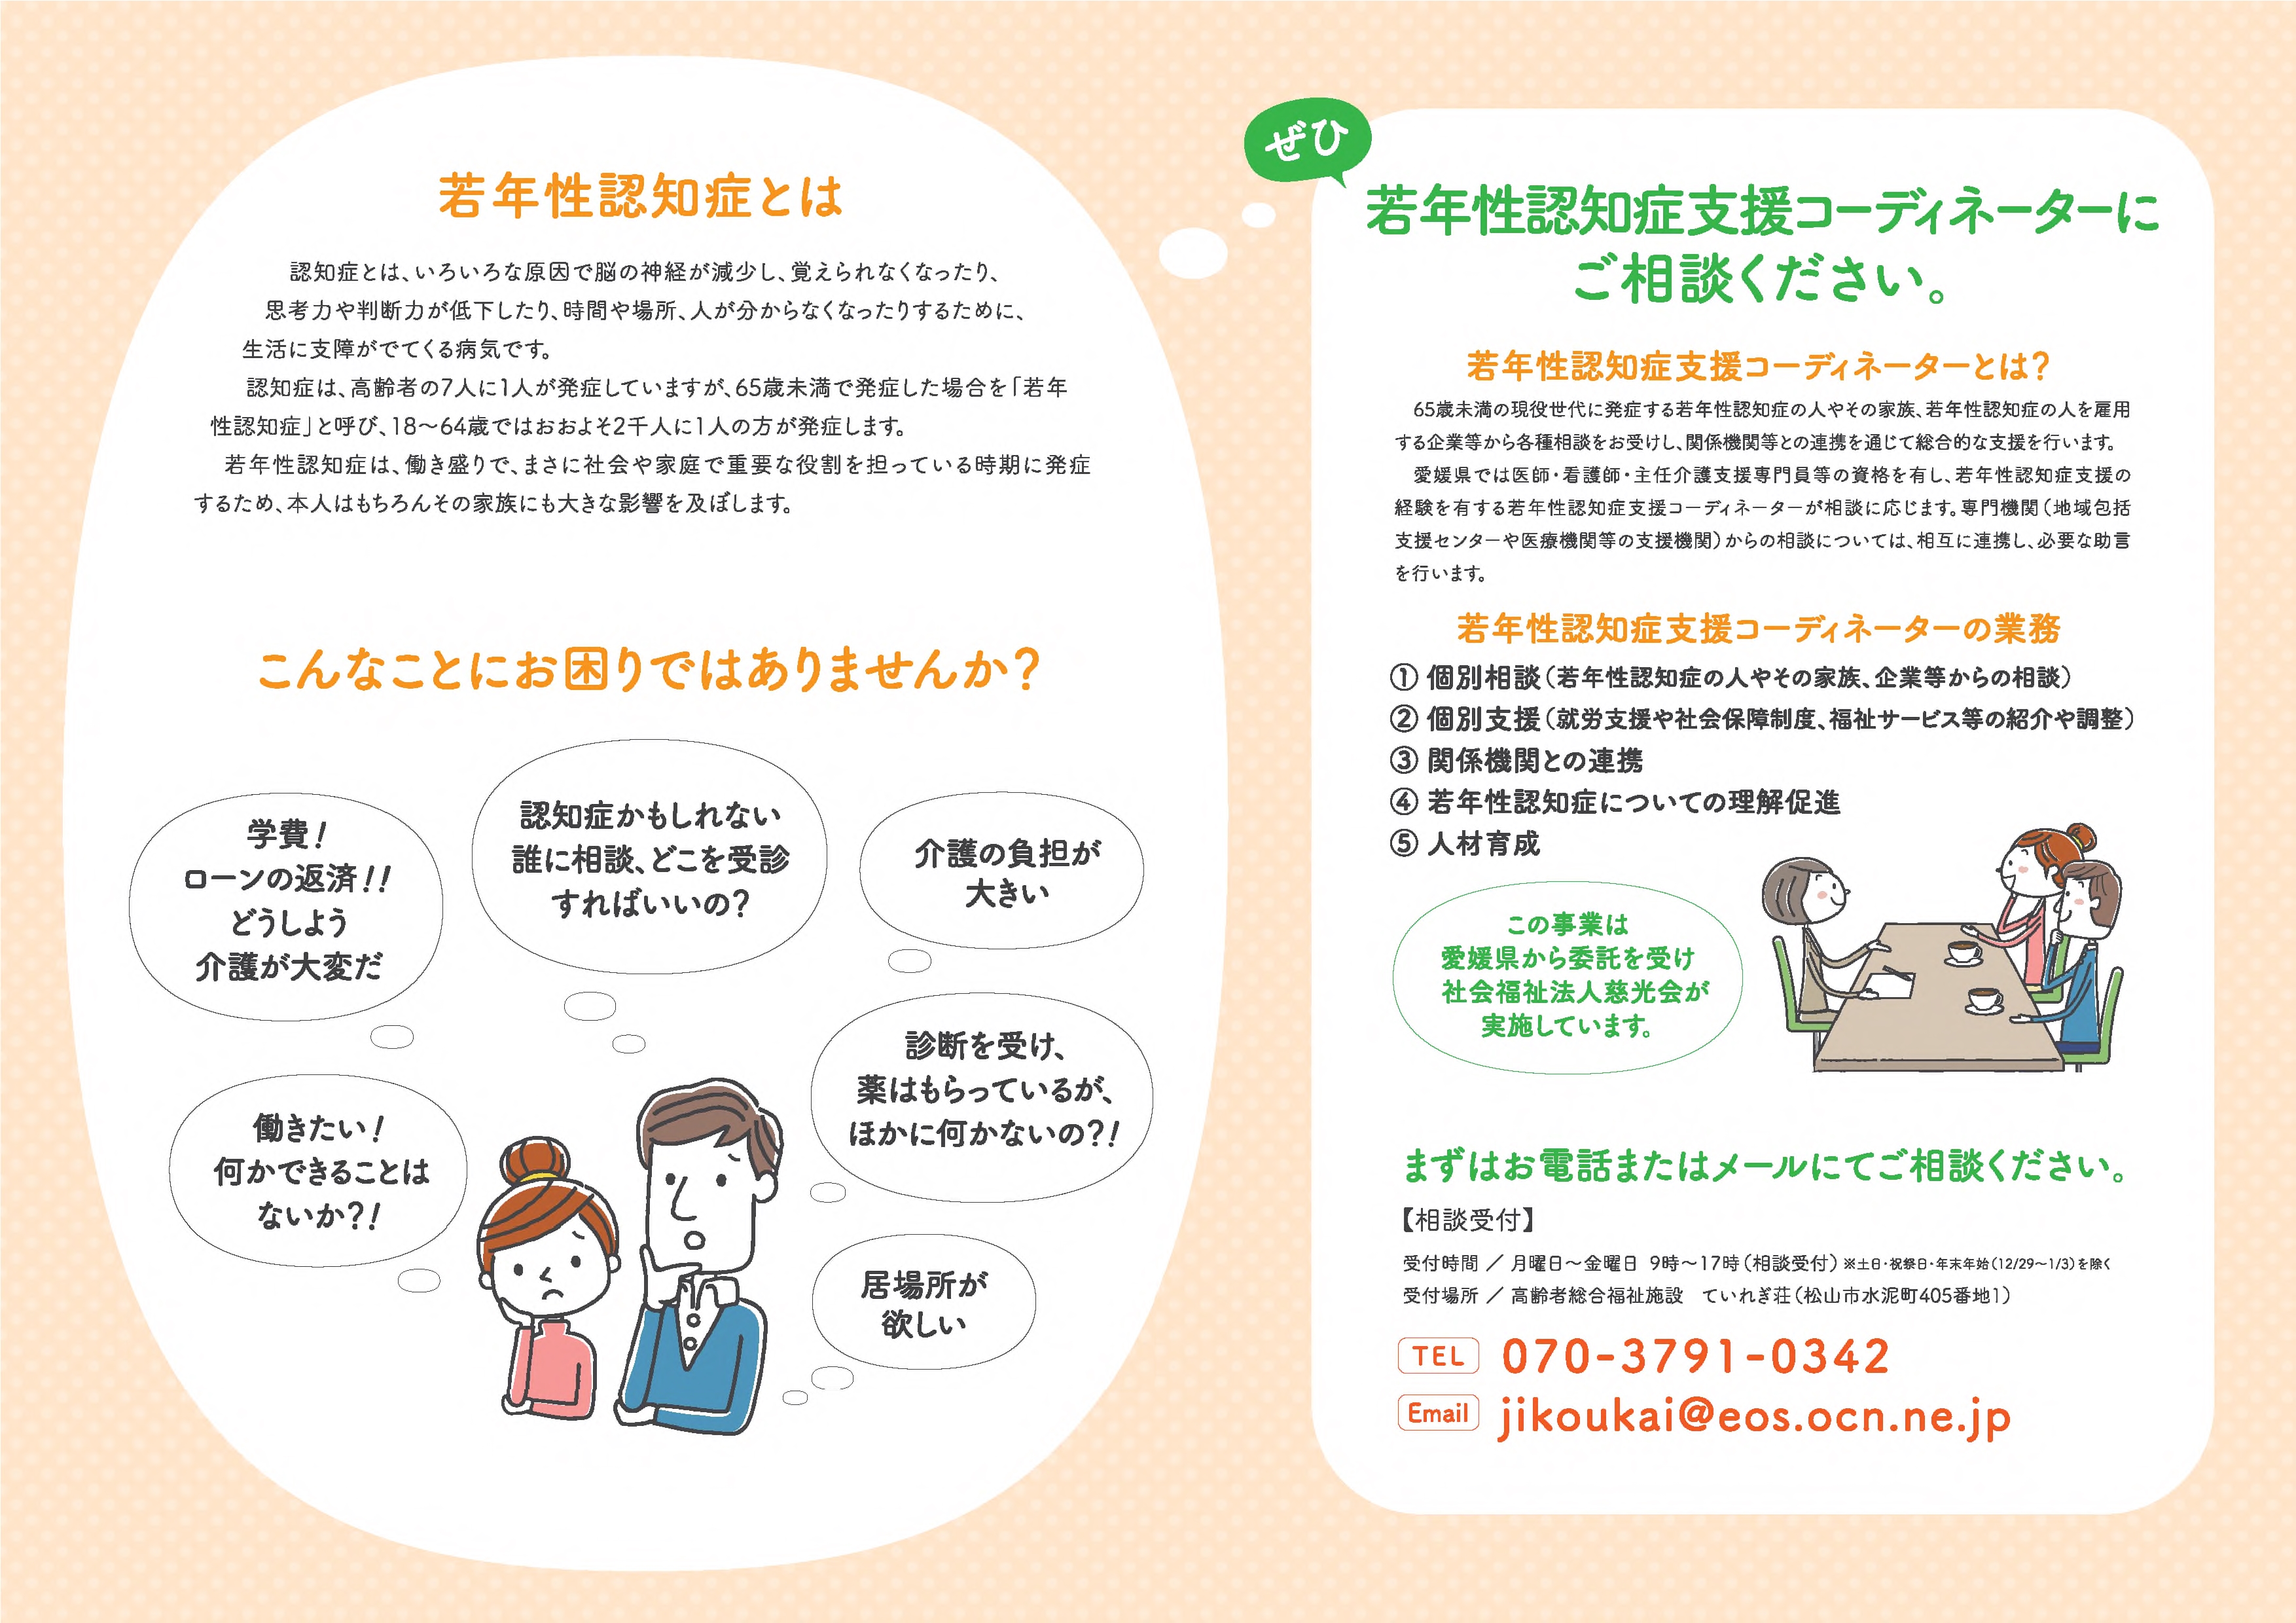 愛媛県若年性認知症支援コーディネーターパンフレット裏の画像